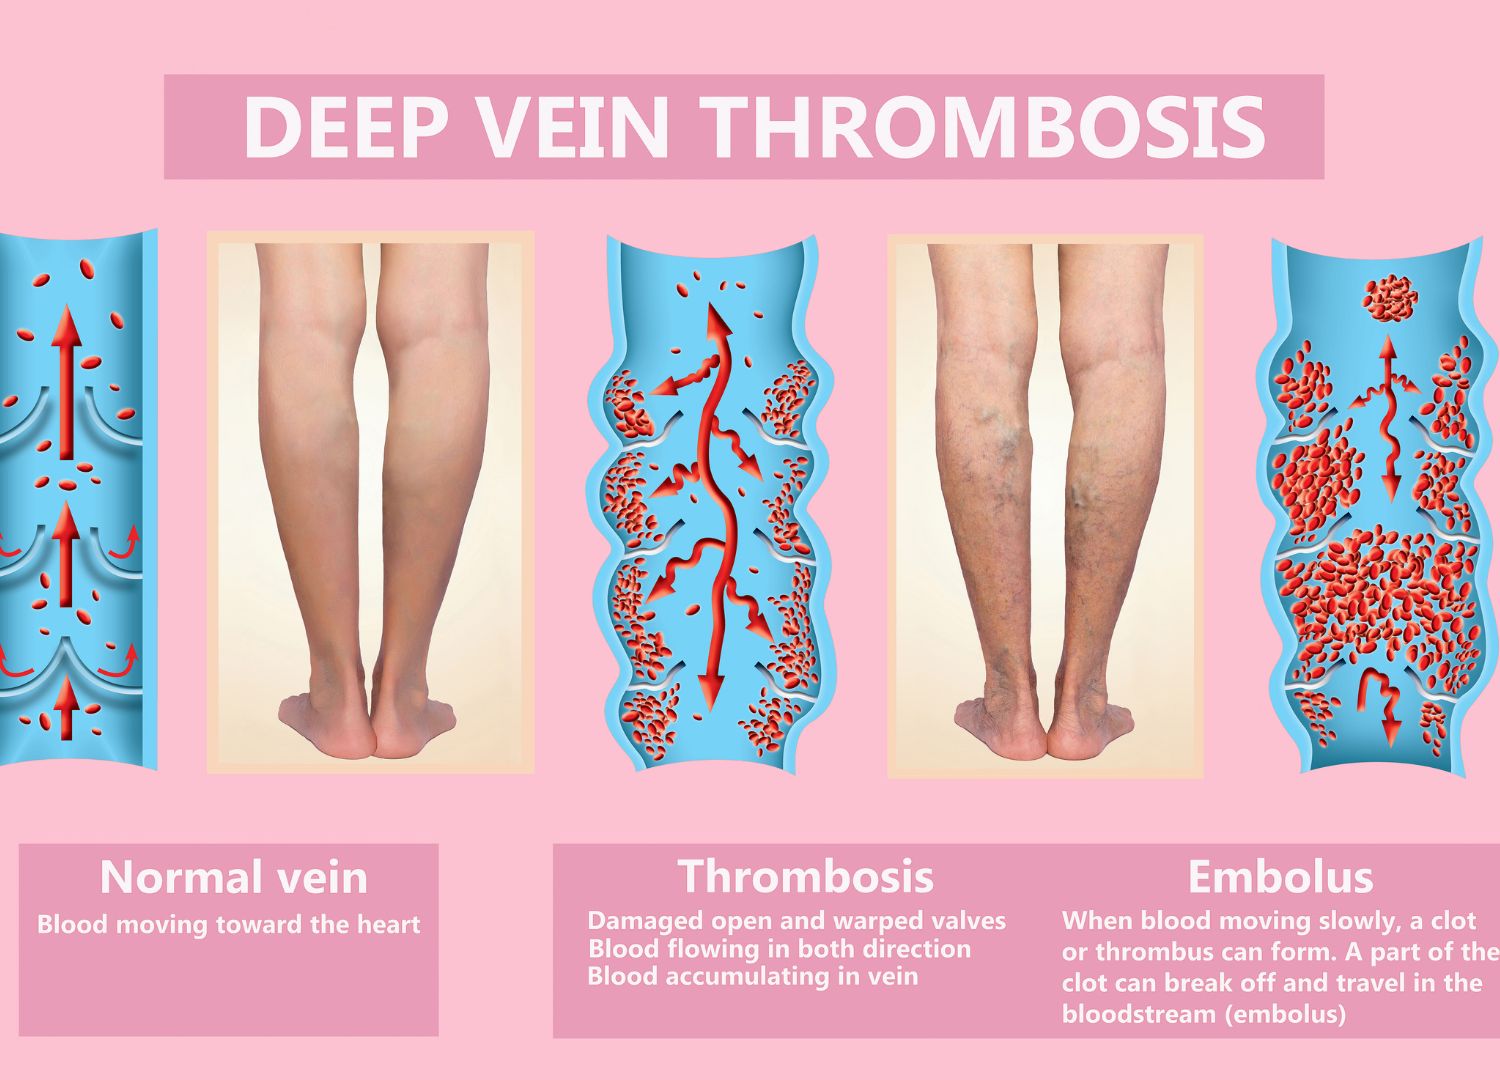 Deep Vein Thrombosis: Dangerous blood clot